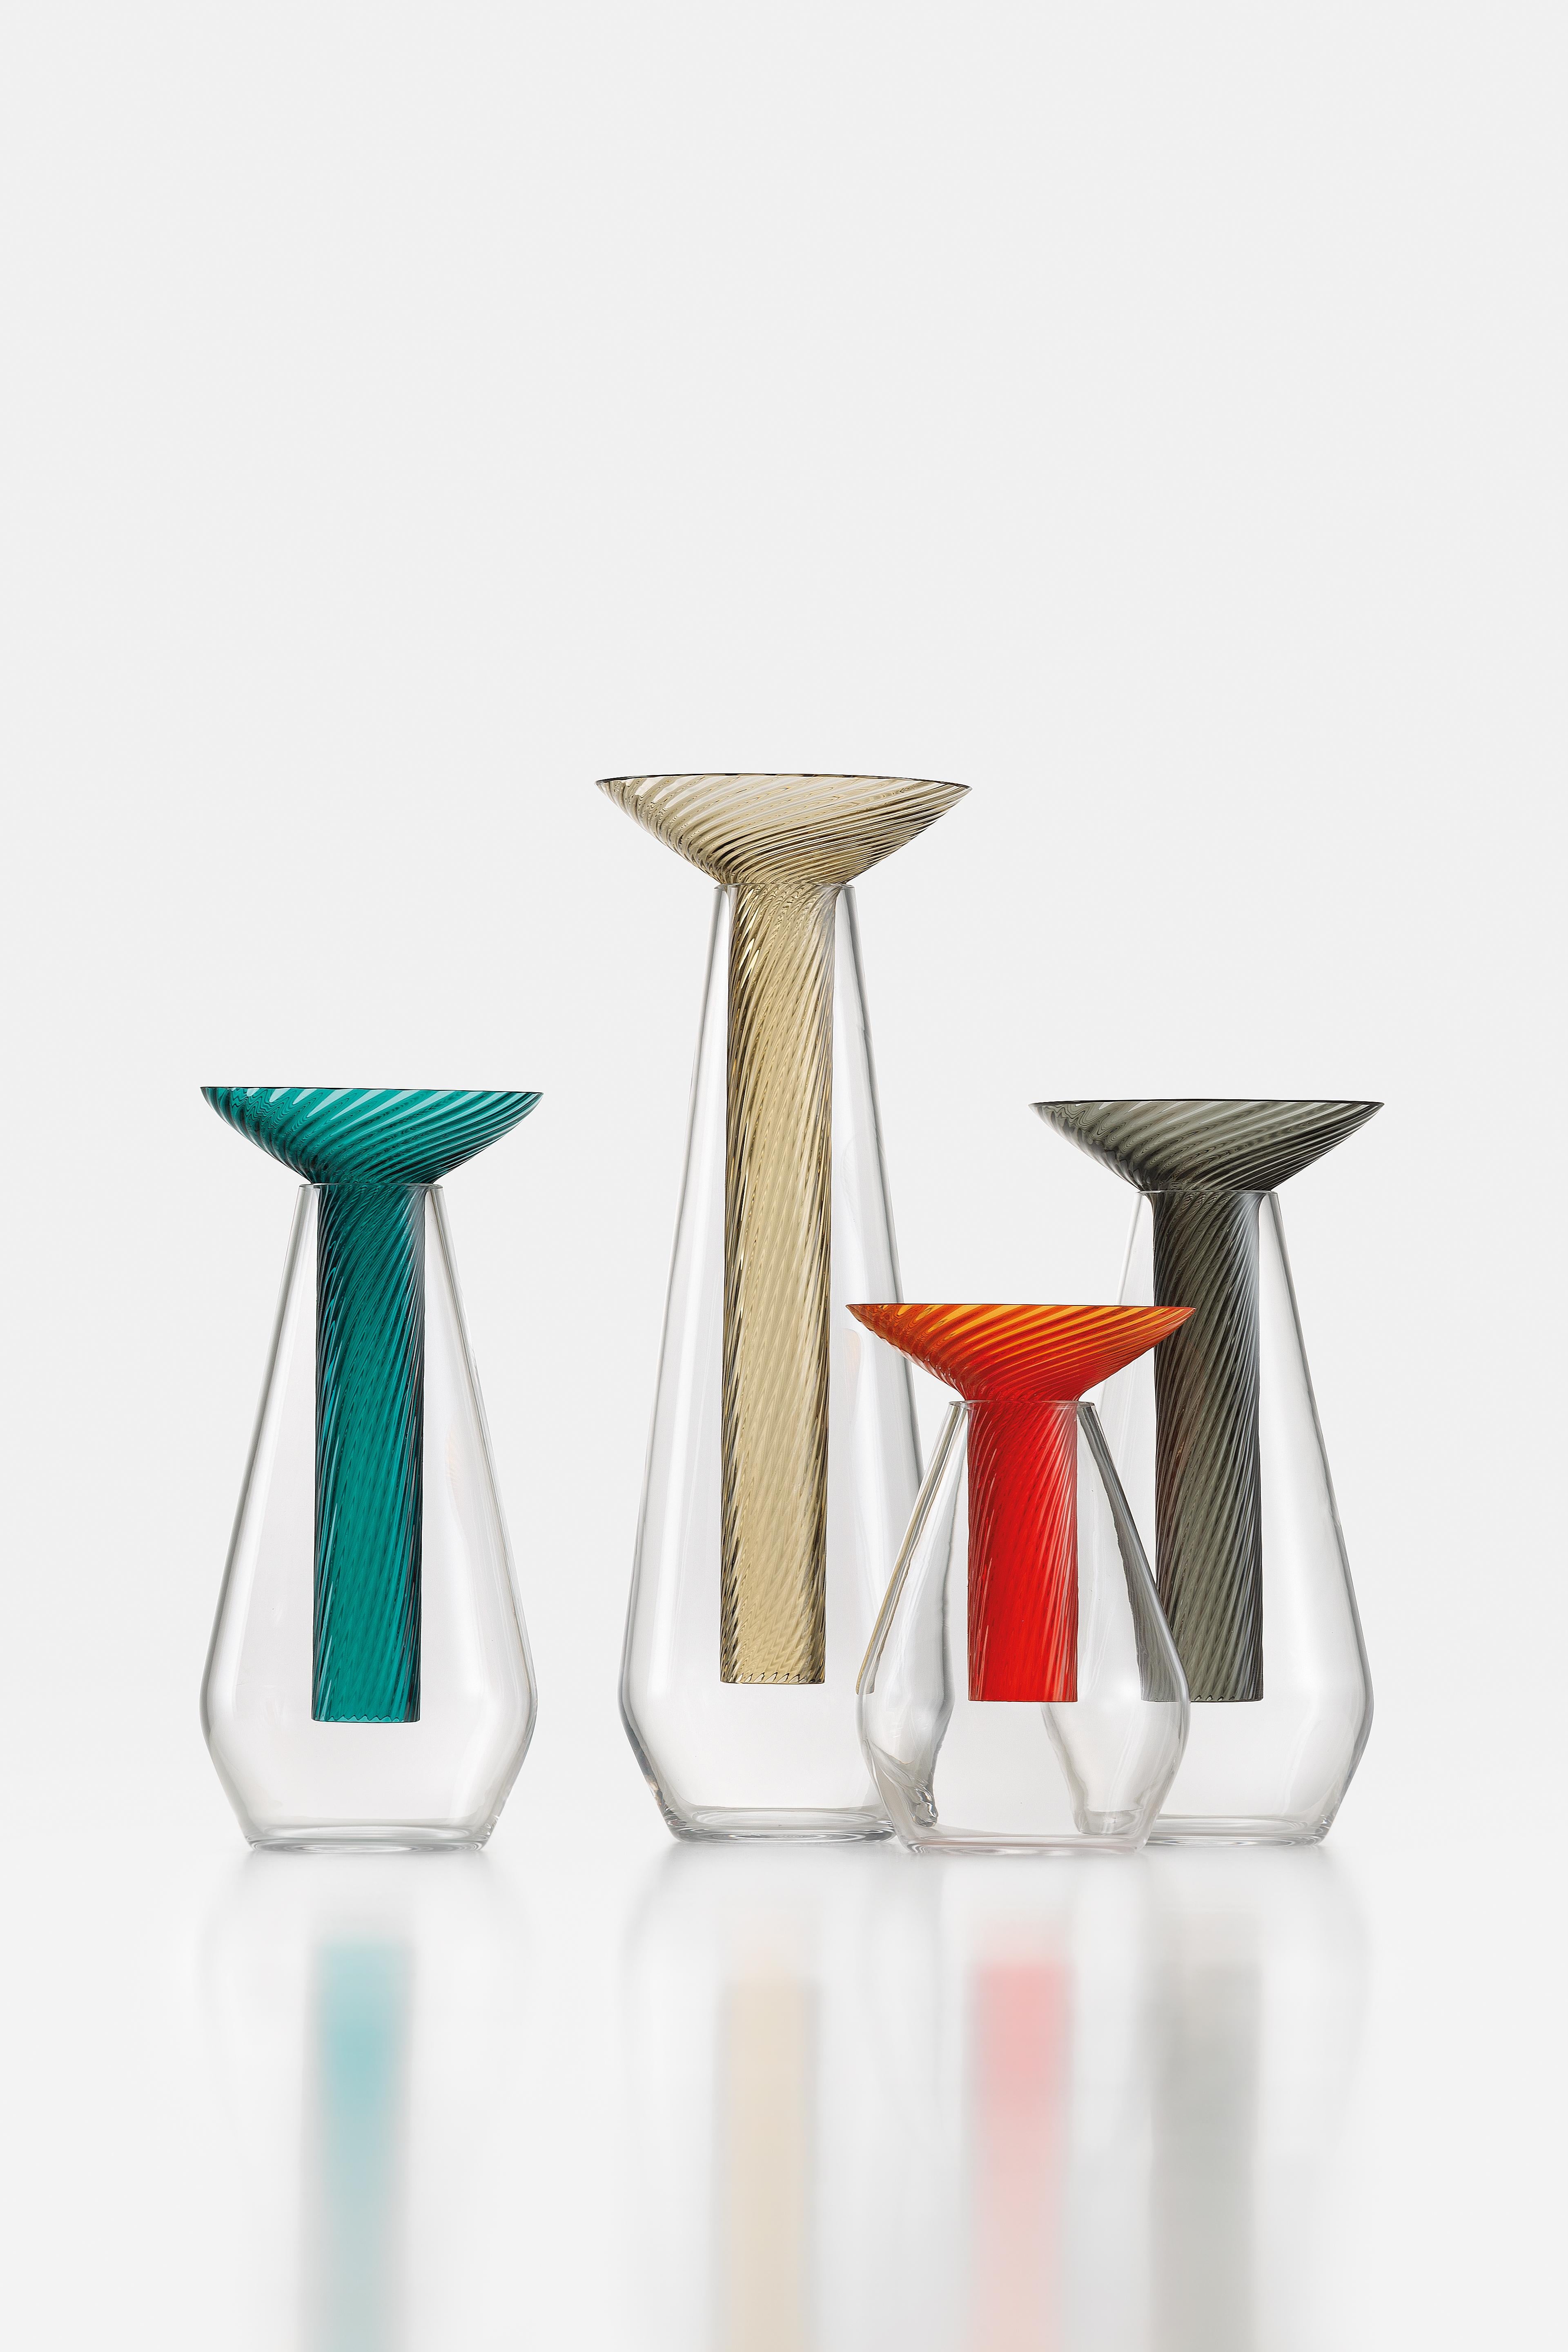 Contemporary Small Calici Vase in Murano Glass by Federico Peri